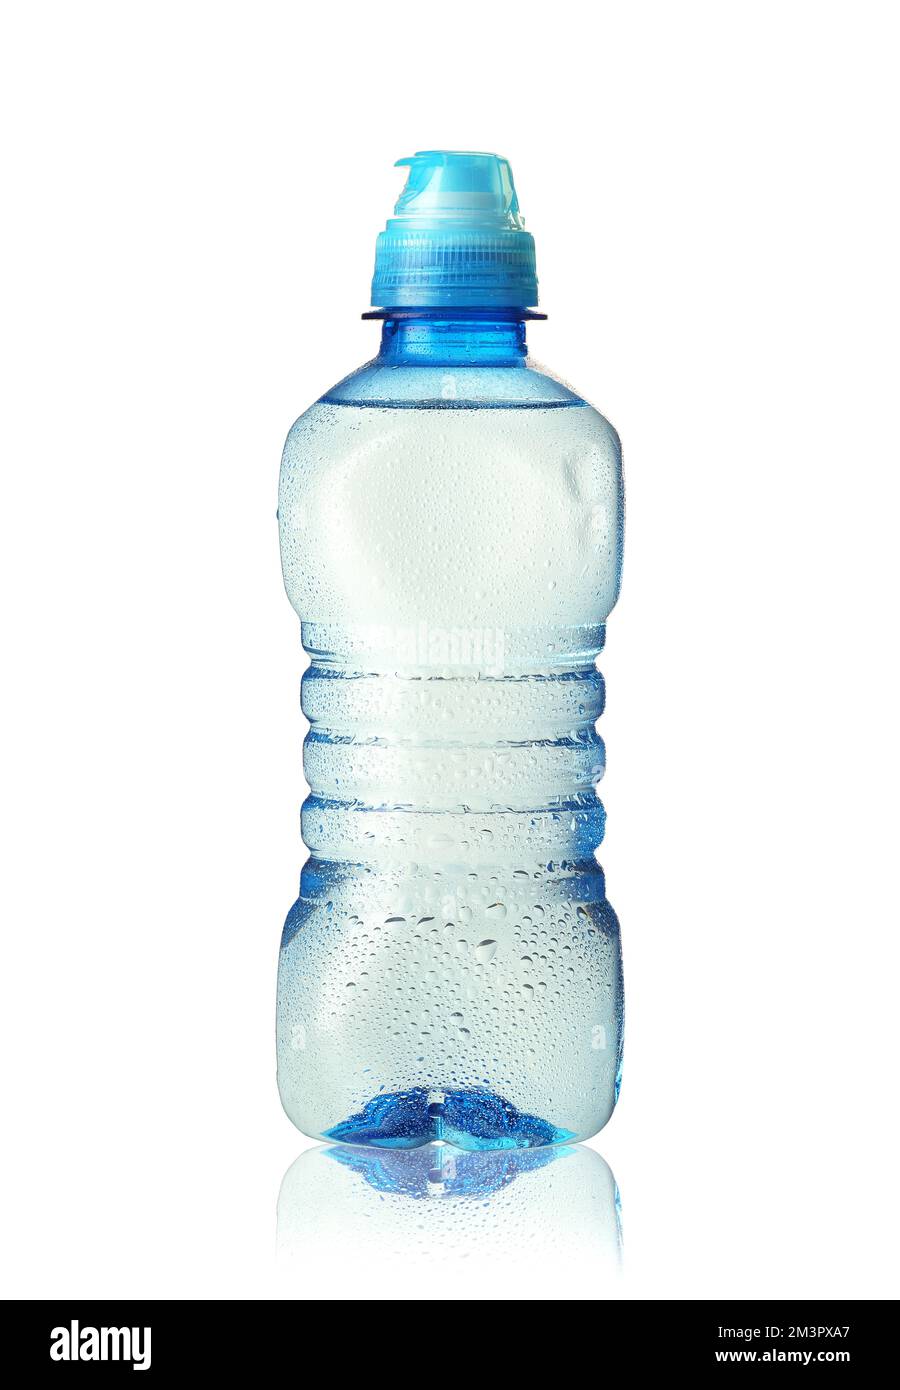 une petite bouteille en plastique d'eau minérale sur fond blanc